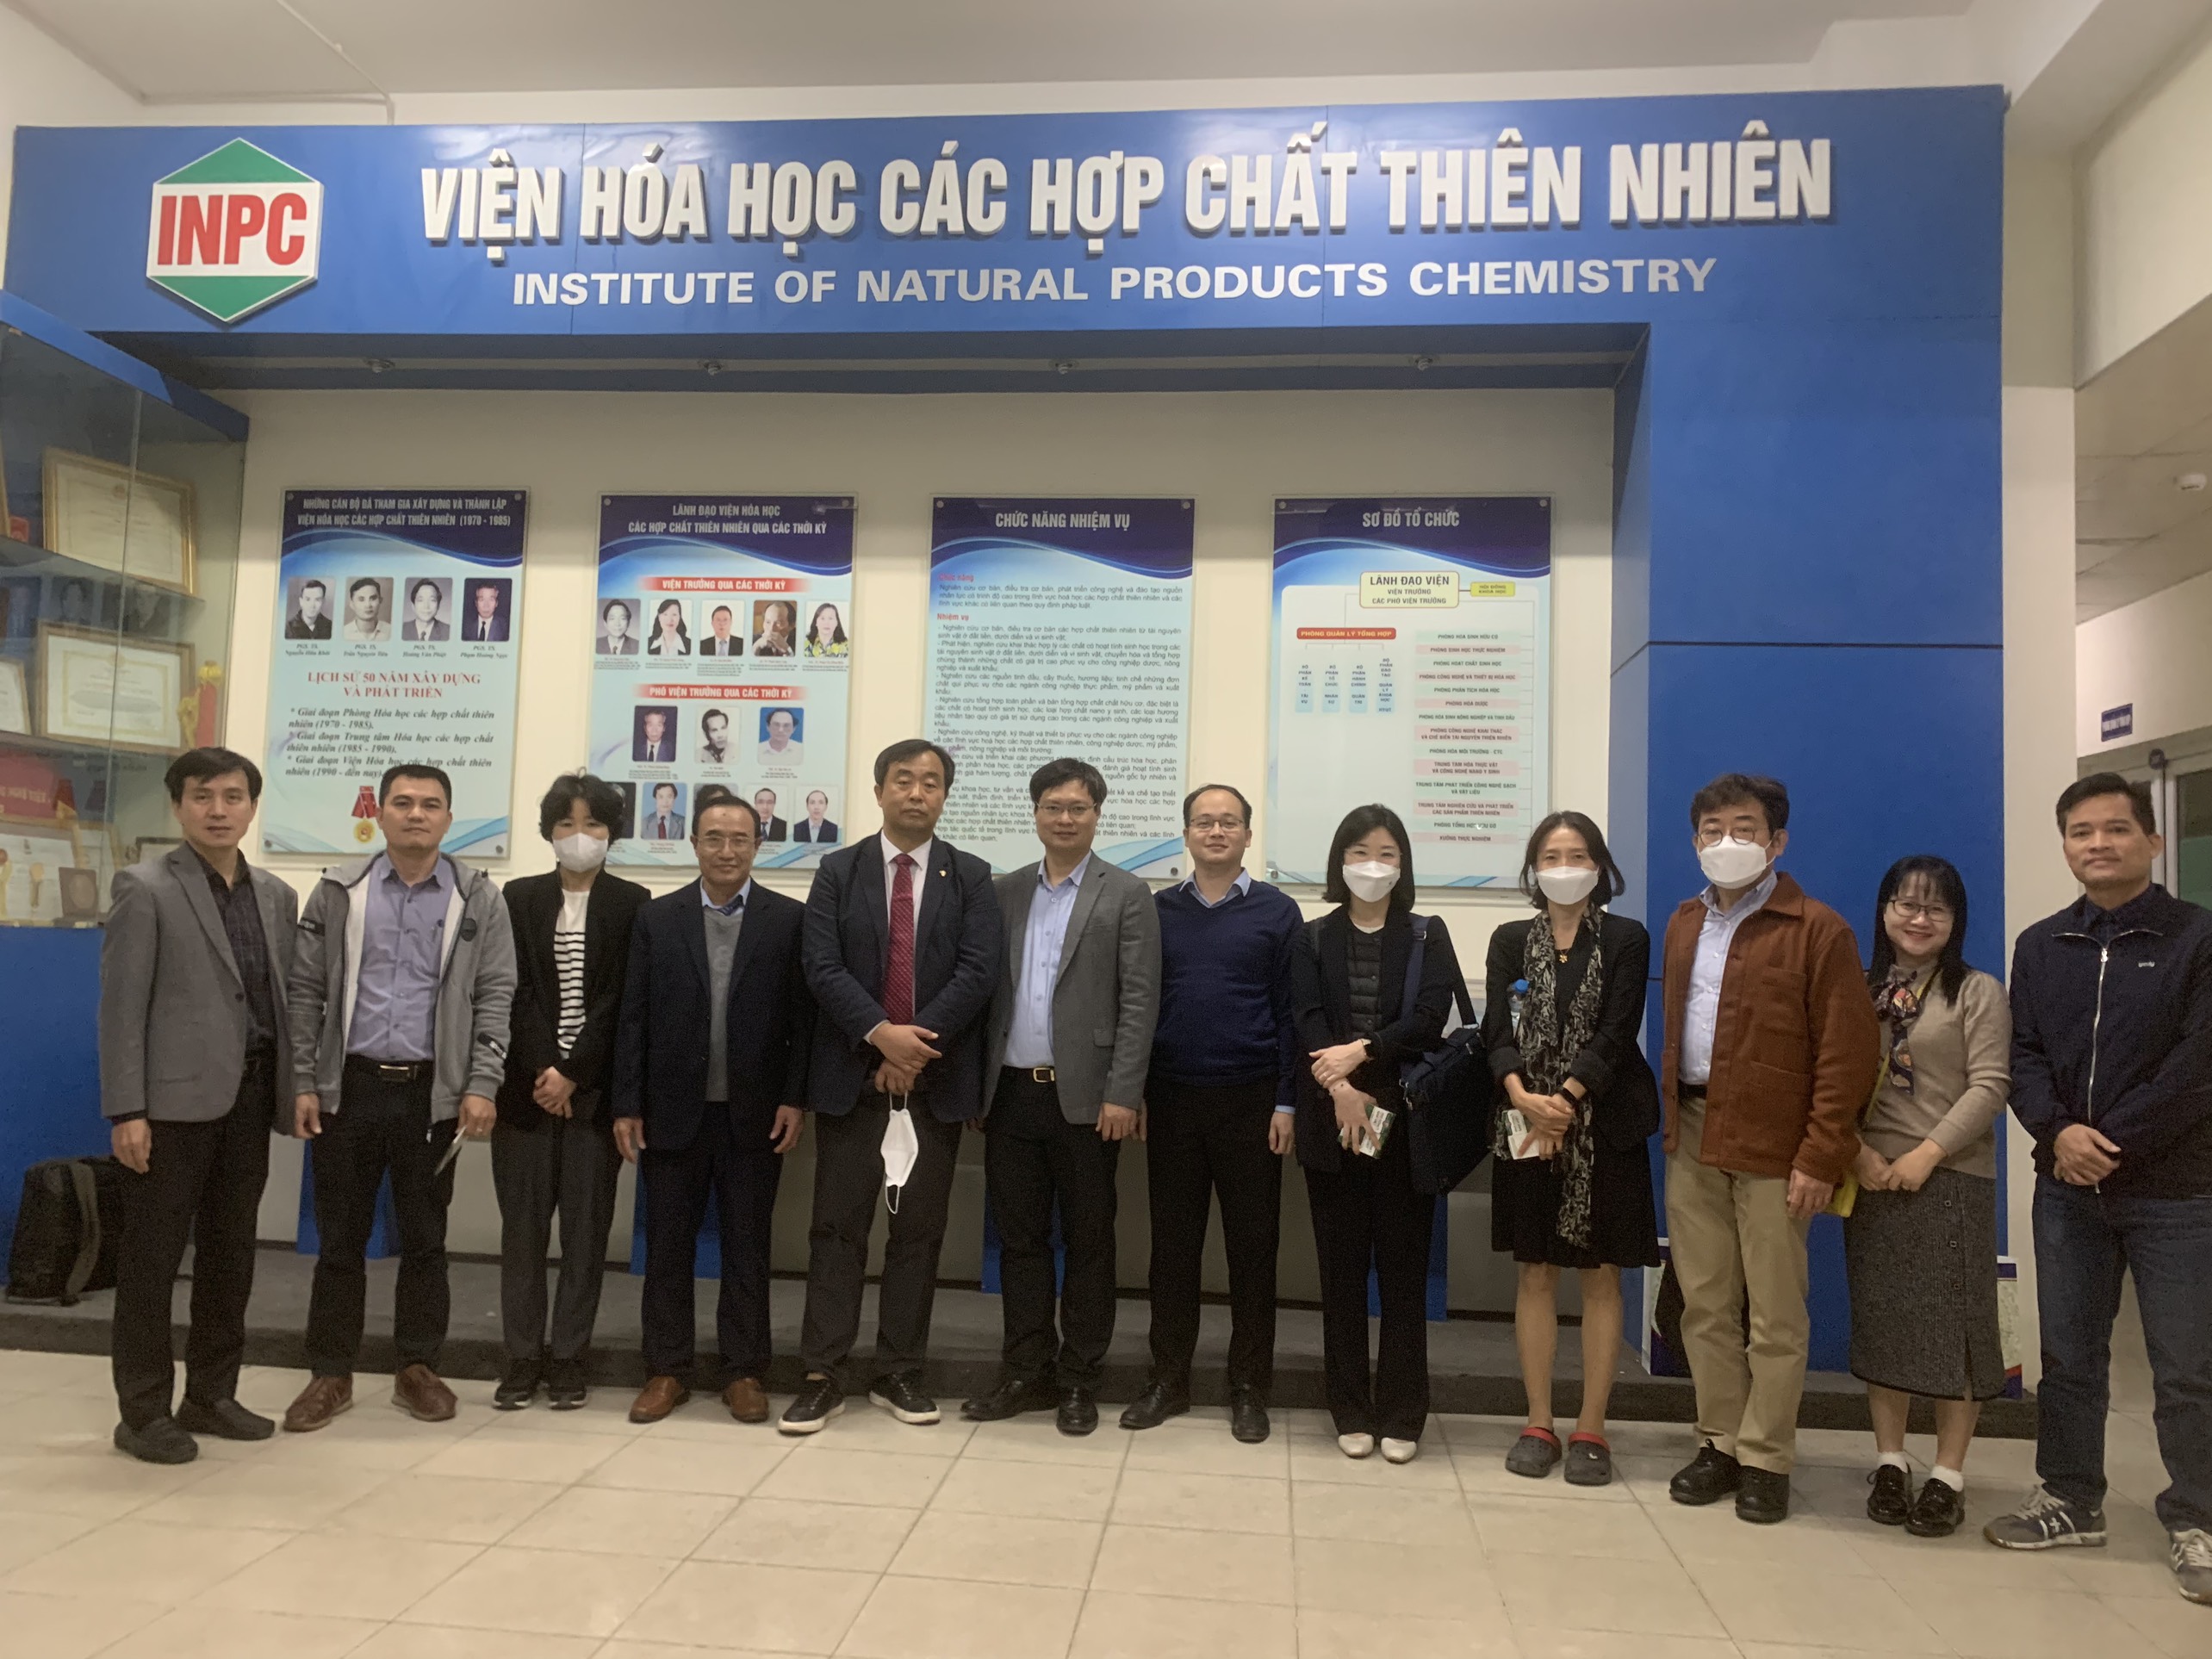 Đại diện Quỹ Nghiên cứu Khoa học Hàn Quốc thăm và làm việc tại Viện Hóa học các Hợp chất thiên nhiên